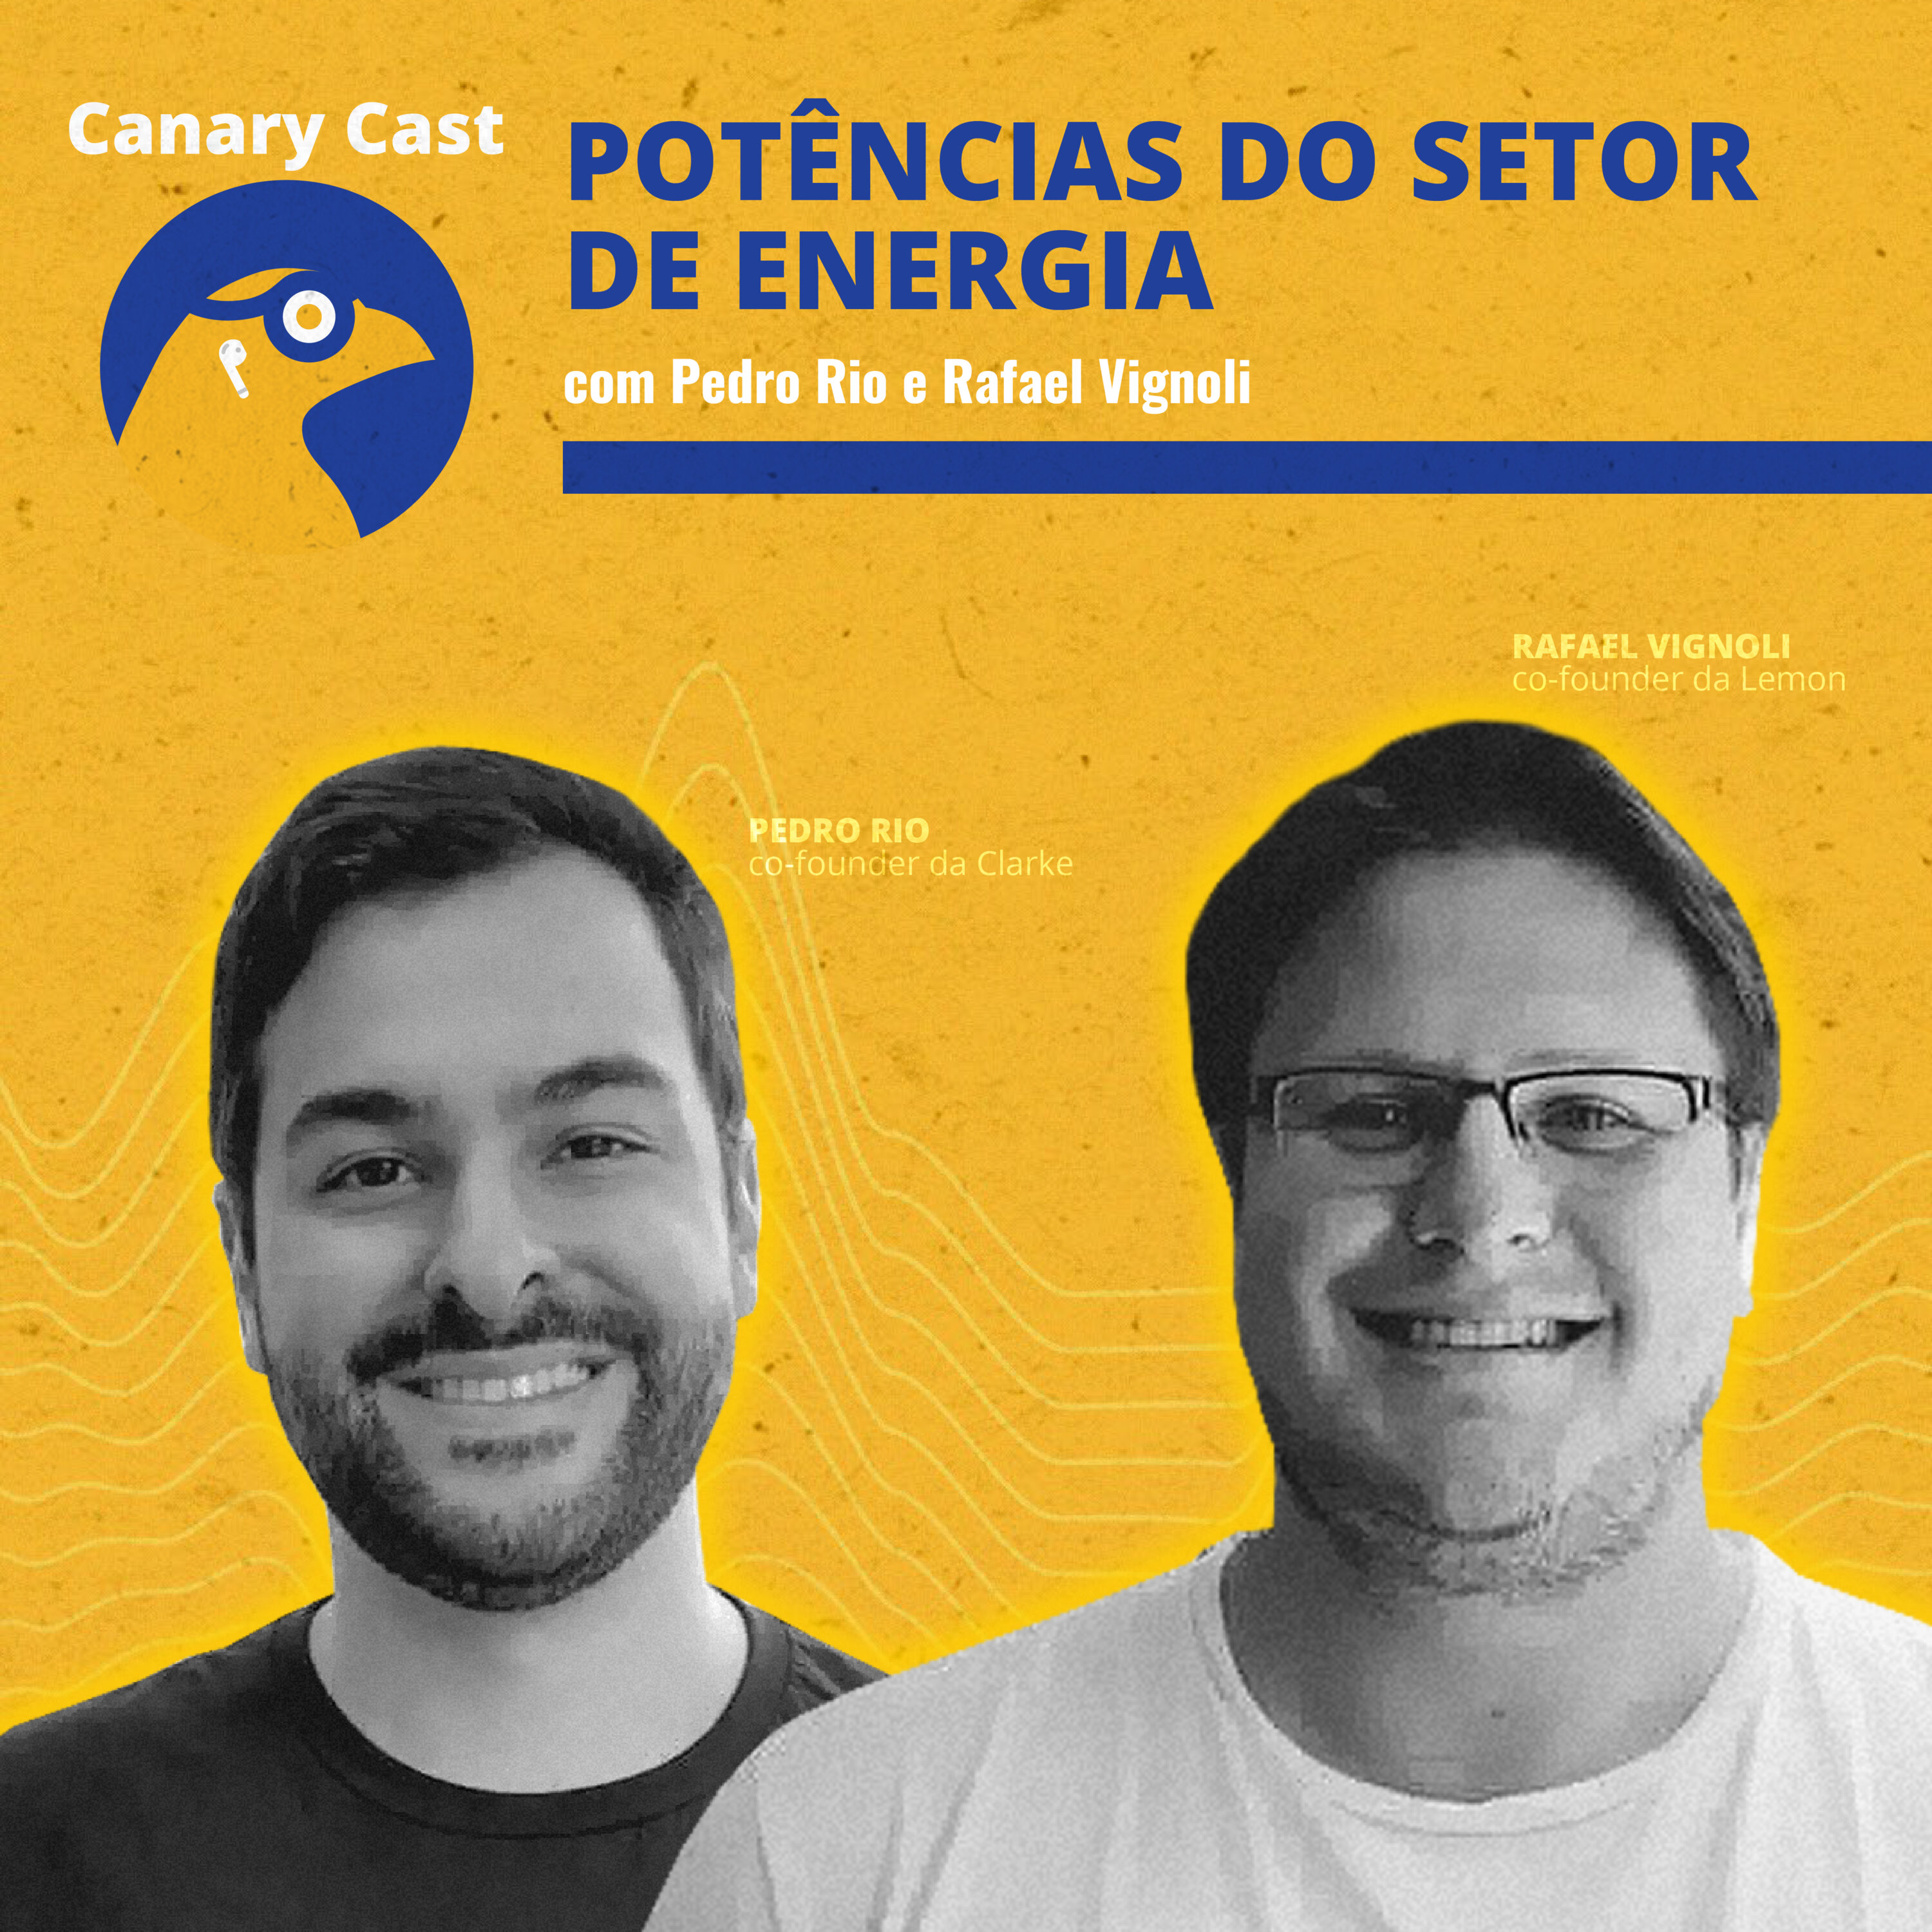 Potências do setor de energia, com Pedro Rio e Rafael Vignoli